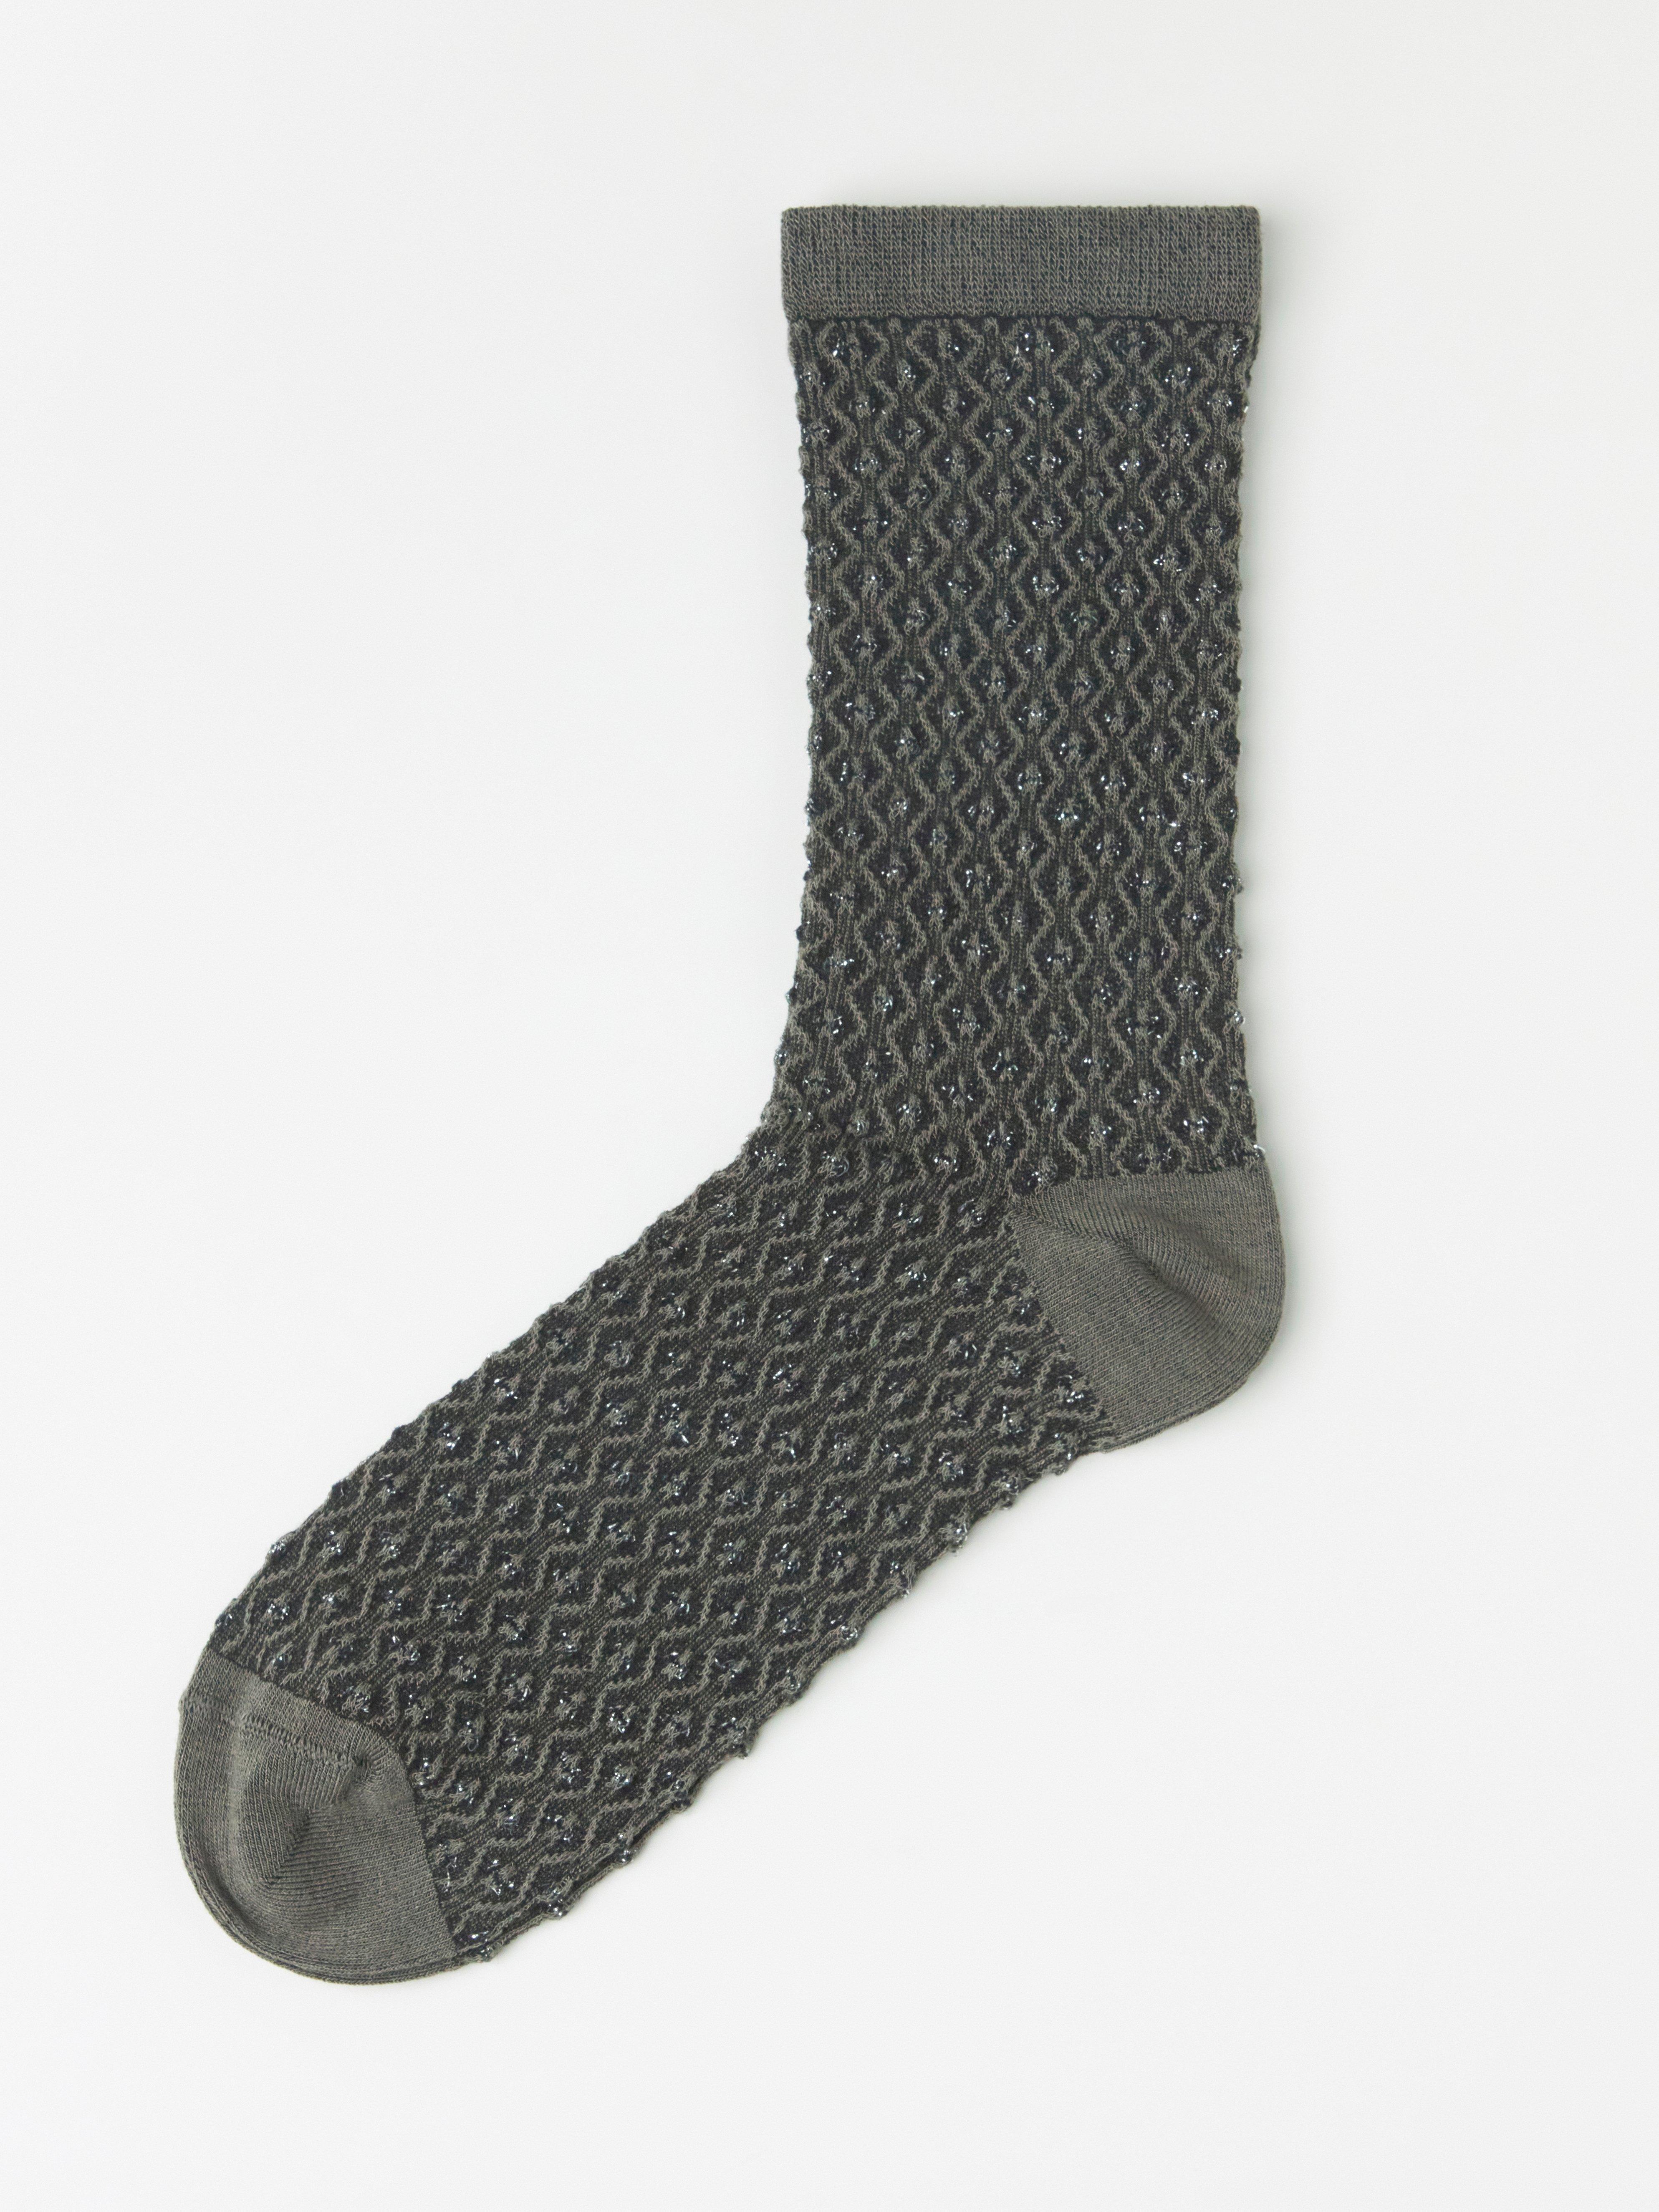 Lurex-sukat, joissa teksturoitu pilkkukuviointi, Lindex